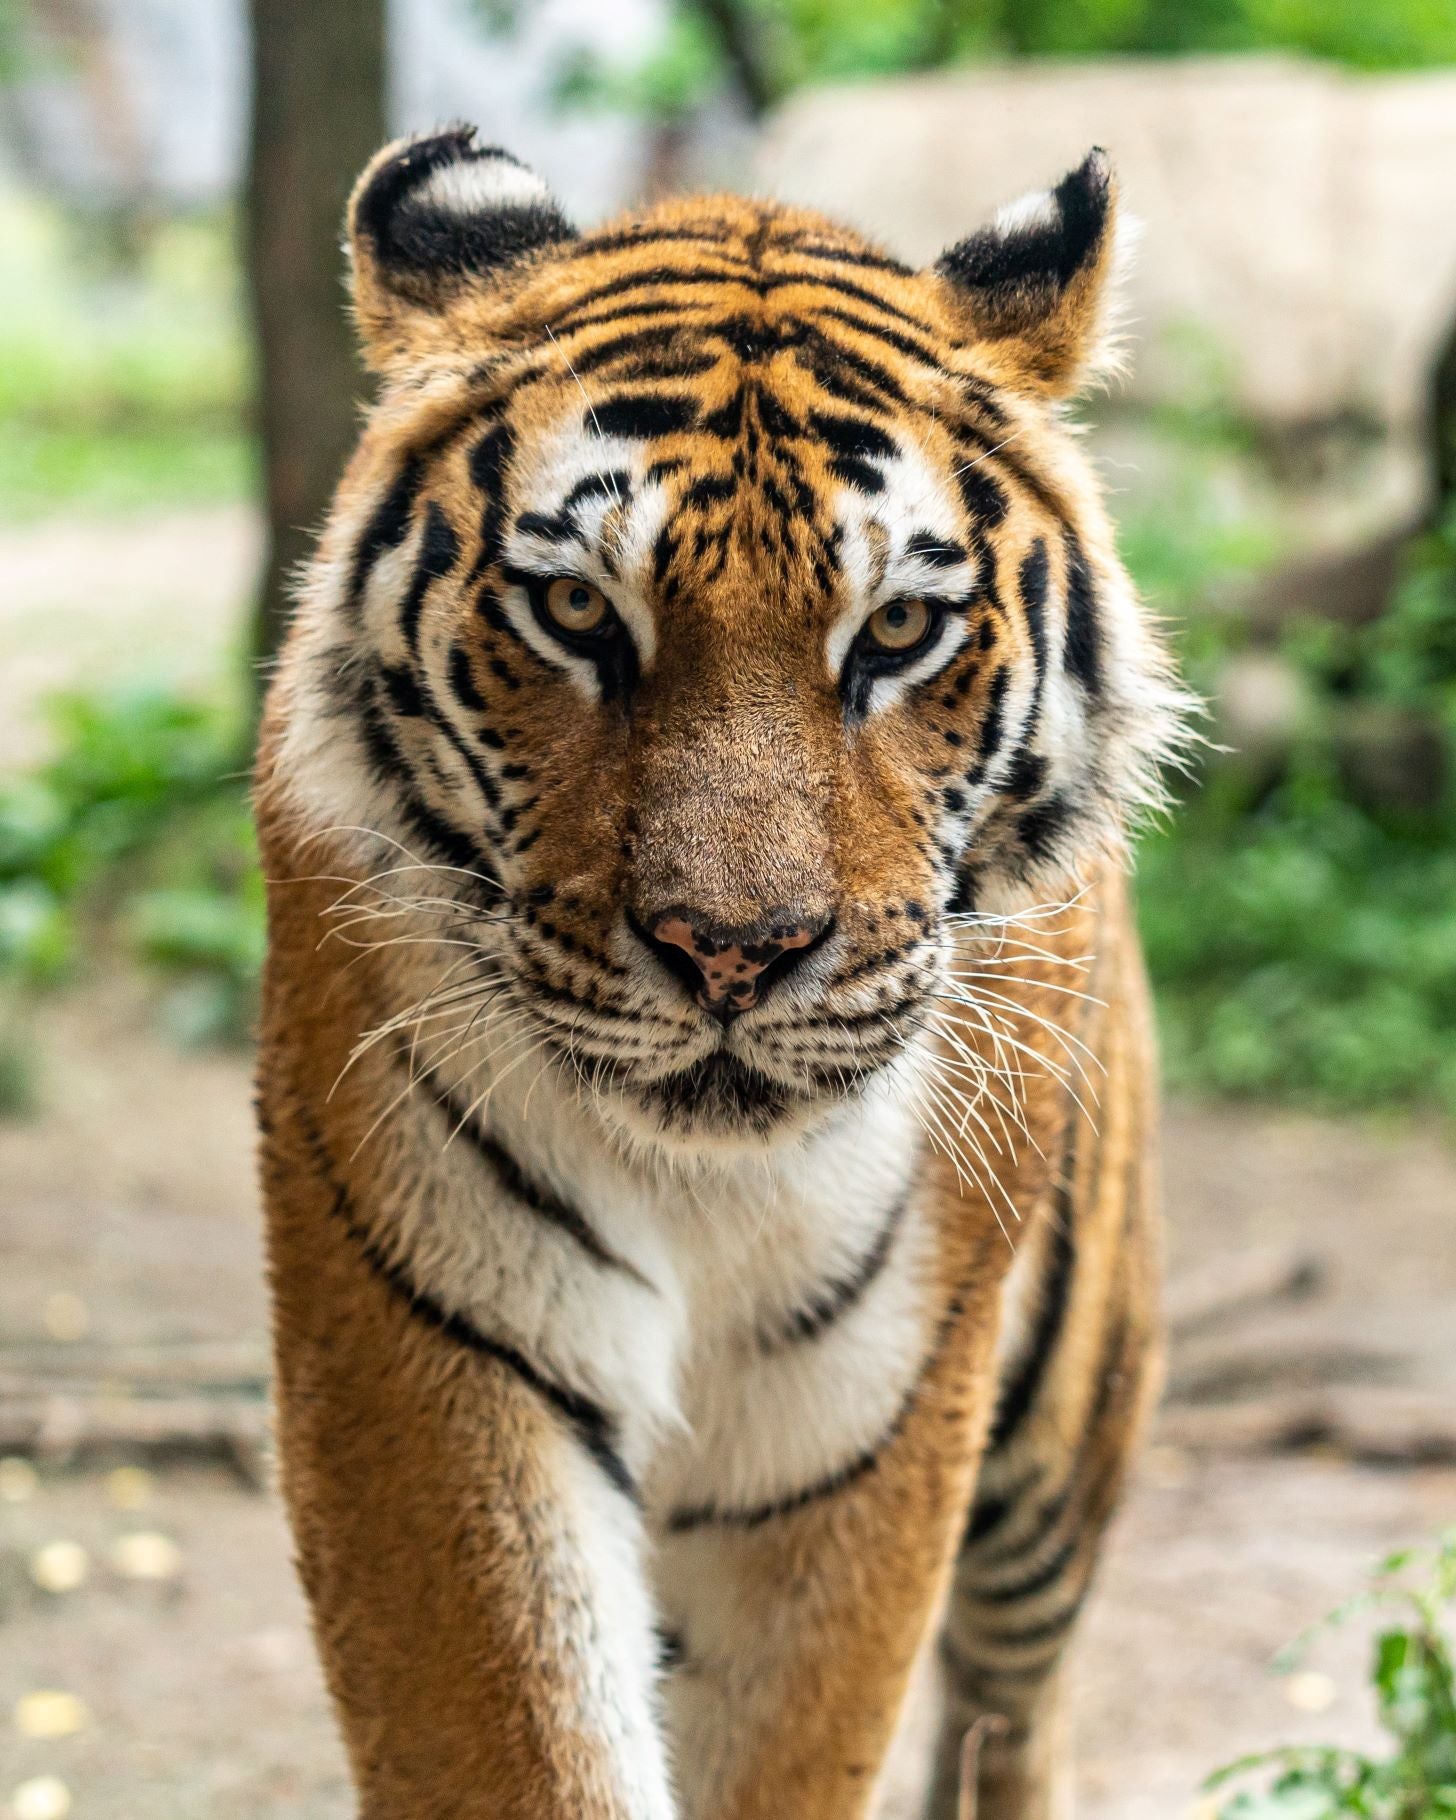 Tiger looking at camera, for a tiger adoption